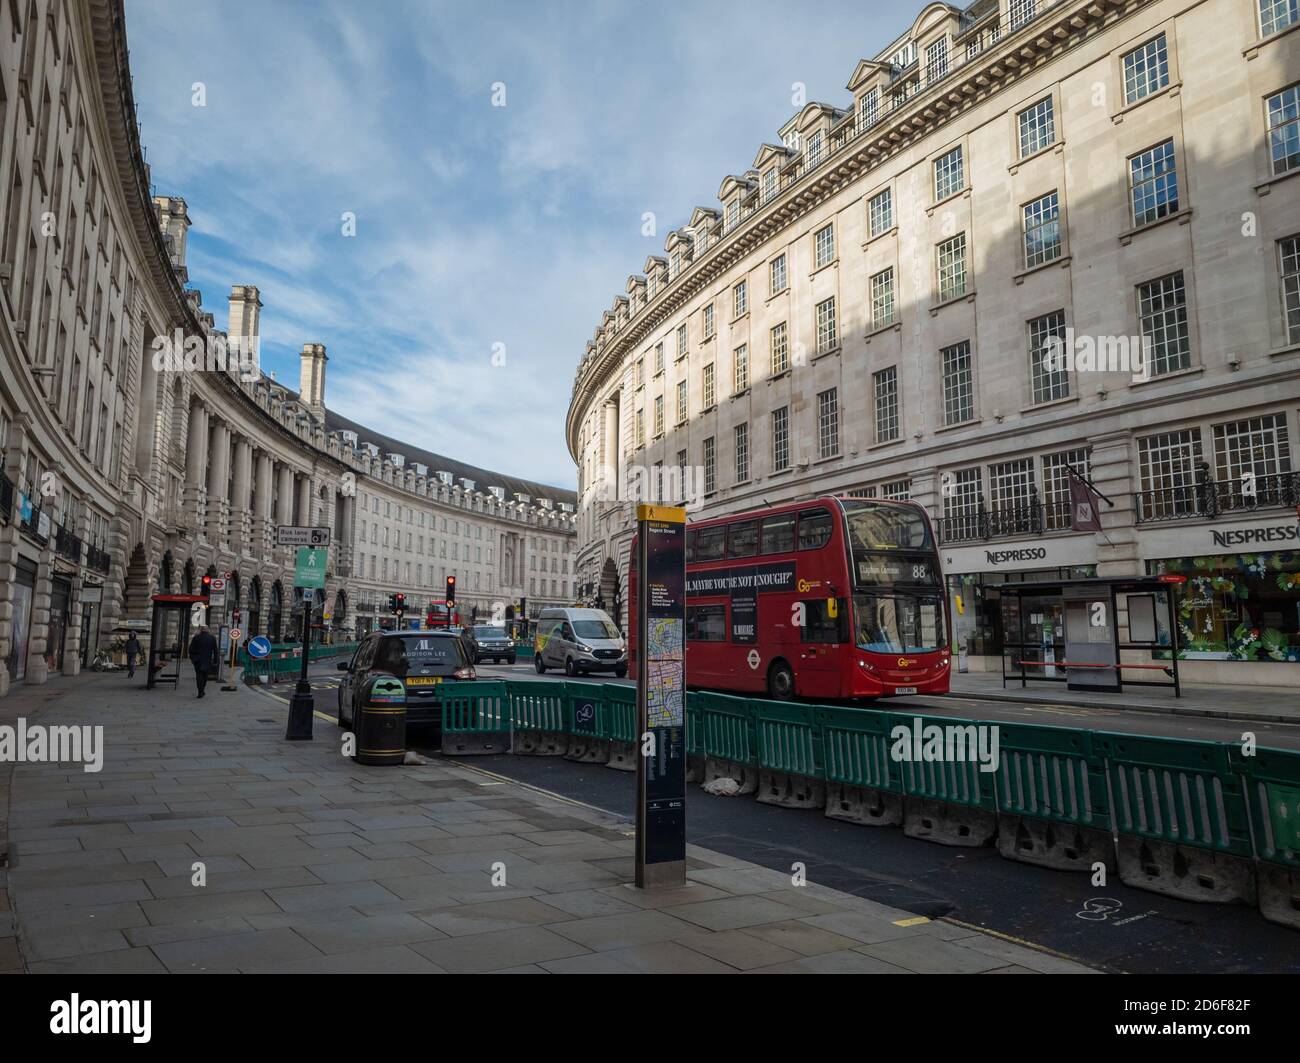 Una vista generale di Regent Street nel West End di Londra, una famosa strada dello shopping che ospita molti negozi, marchi ed etichette famosi in tutto il mondo. Foto Stock